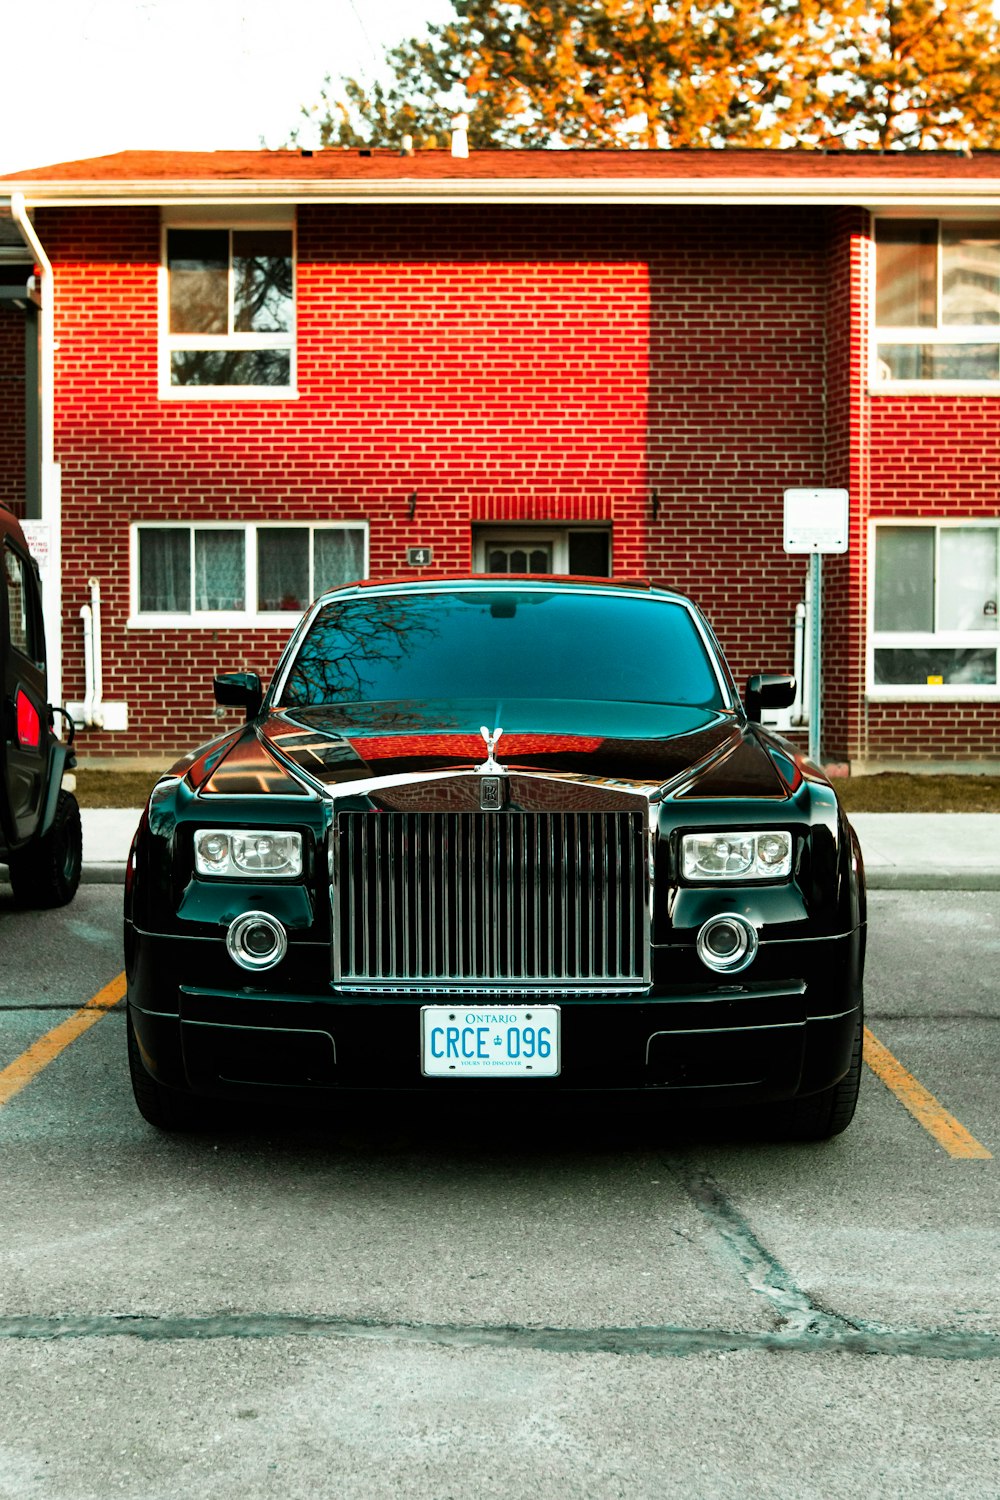 Un Rolls Royce estacionado frente a un edificio de ladrillo rojo